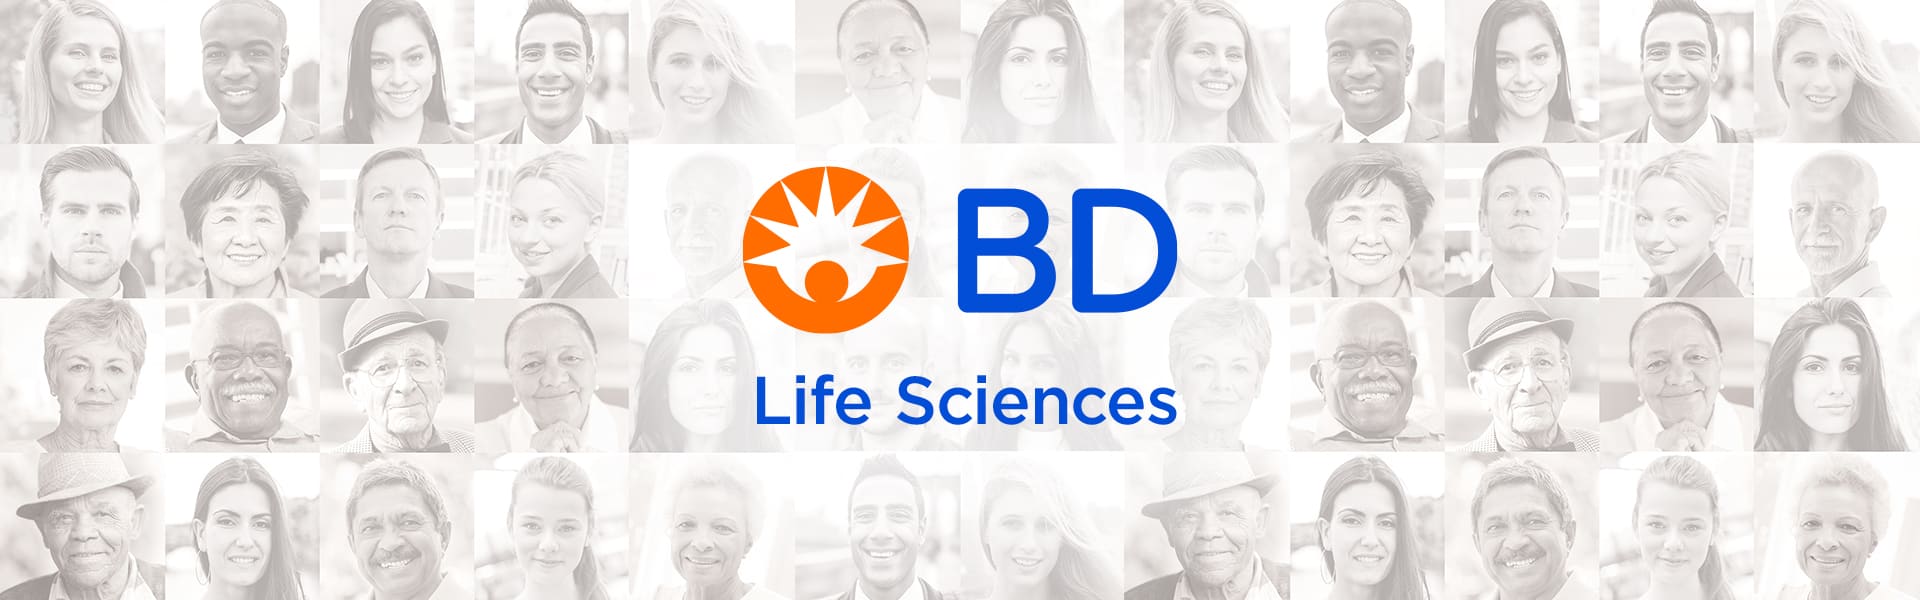 BD Life Sciences